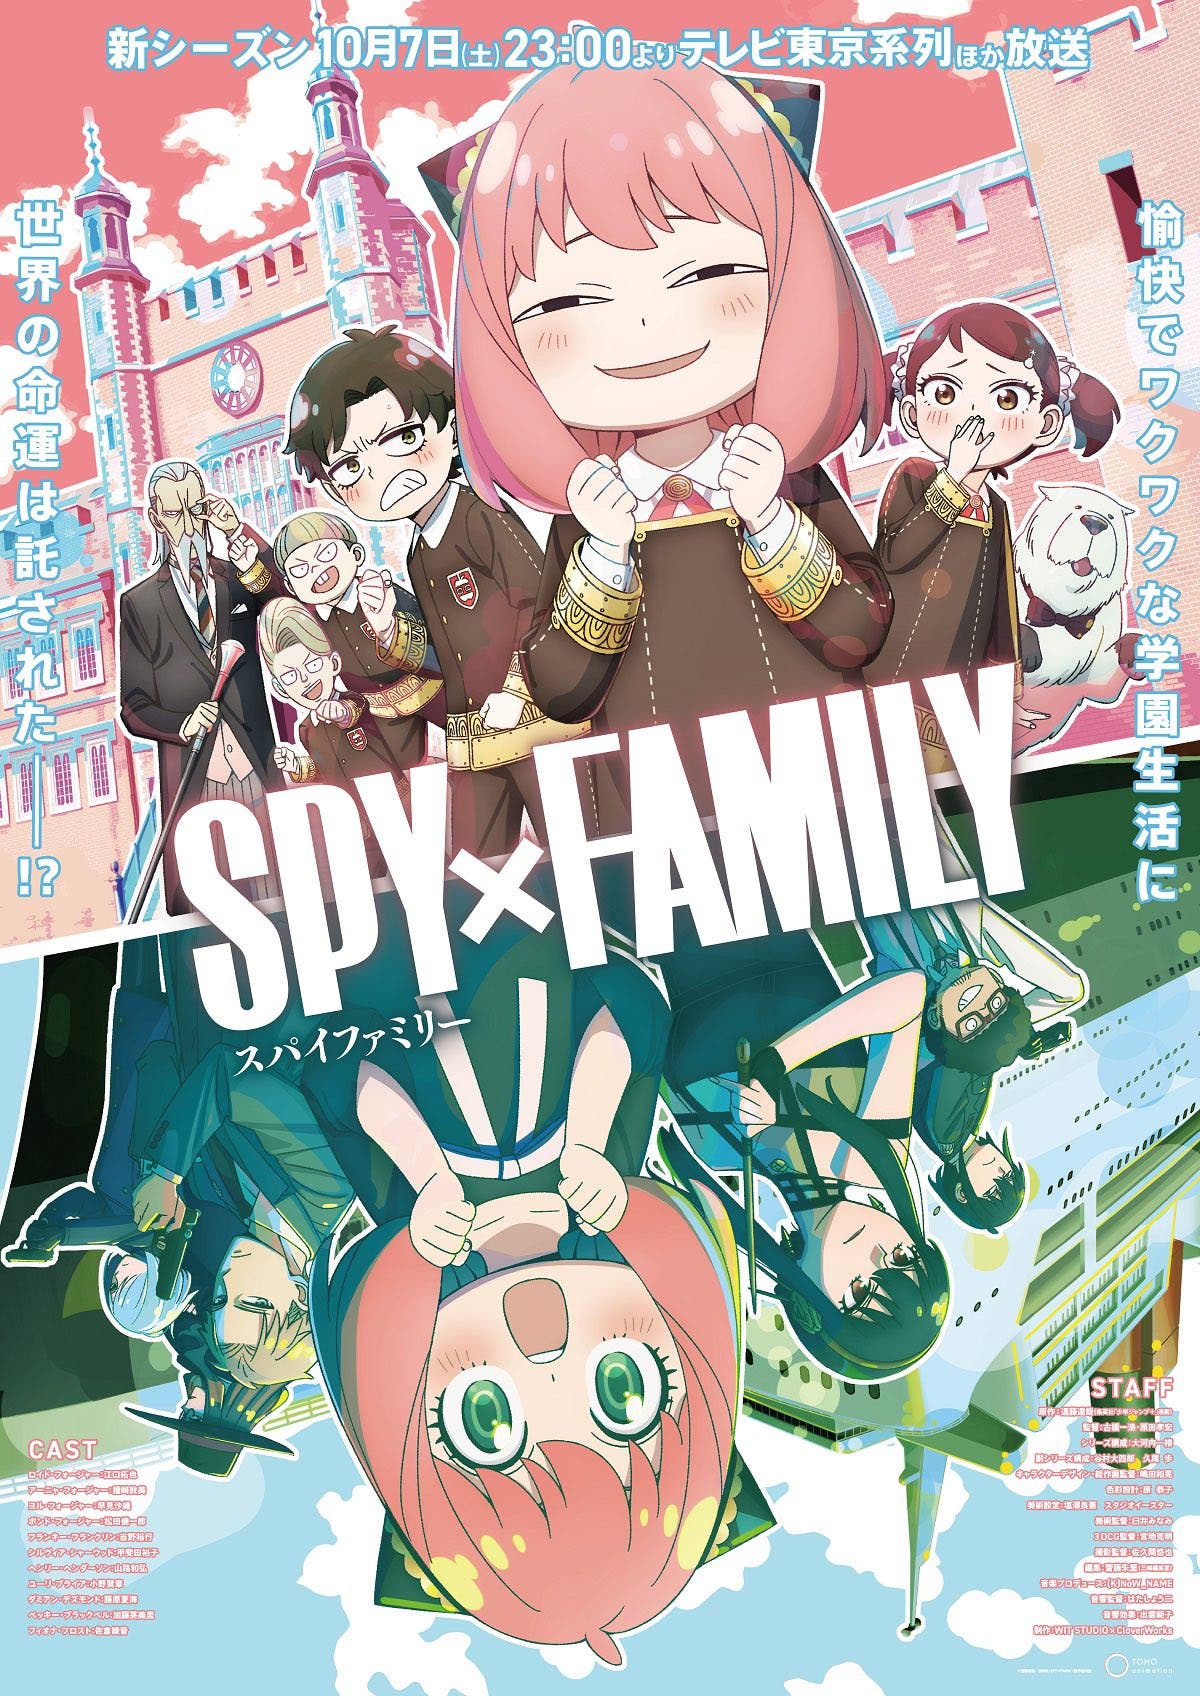 Spy x Family Temporada 2: fecha de estreno, tráiler, cómo ver y lo